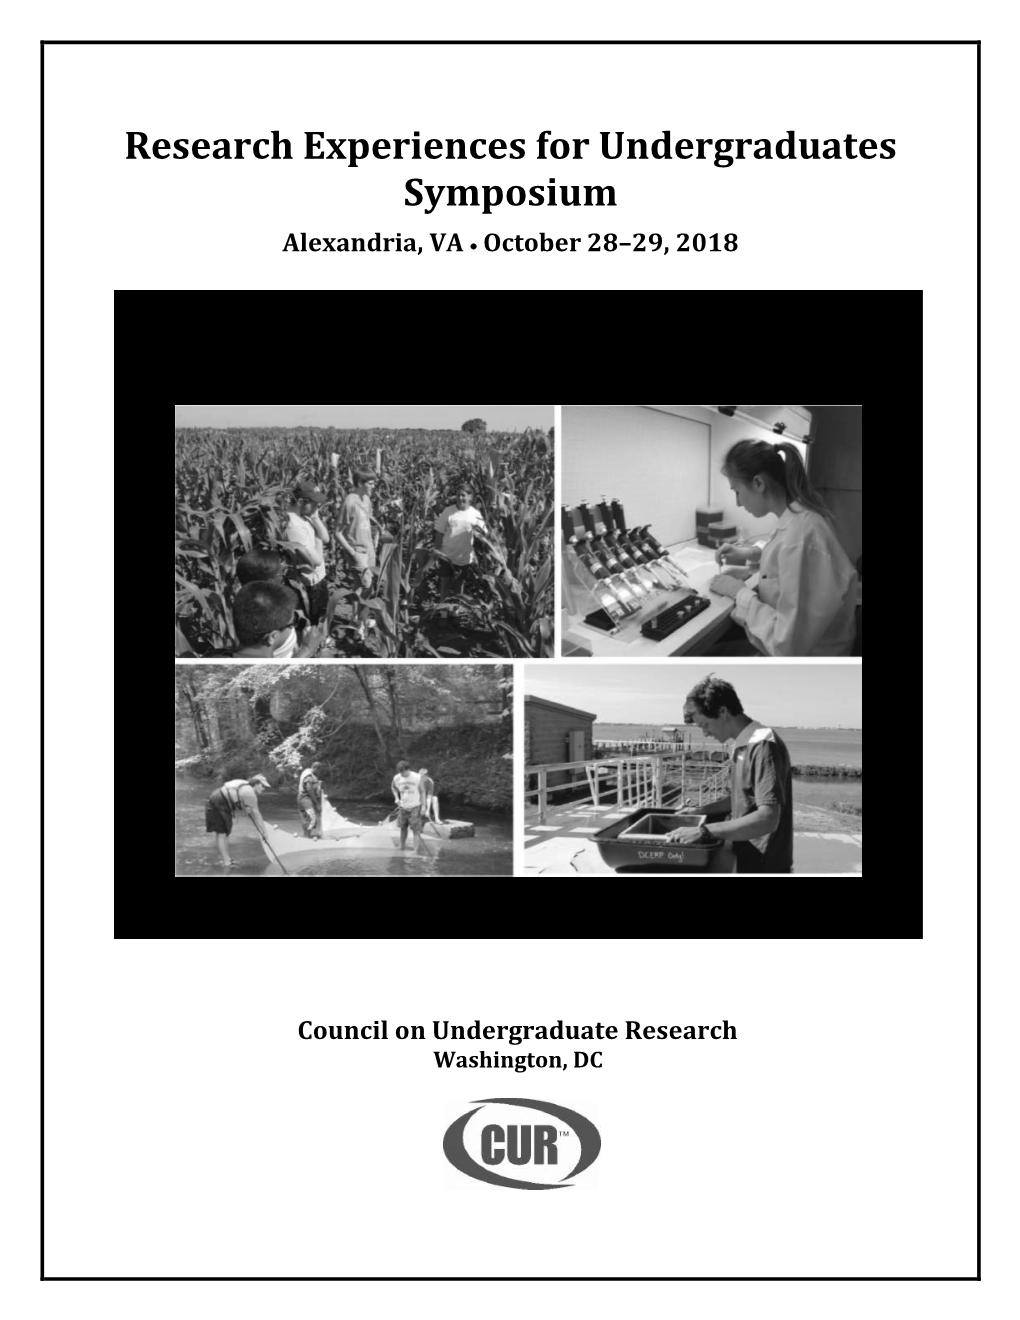 Research Experiences for Undergraduates Symposium